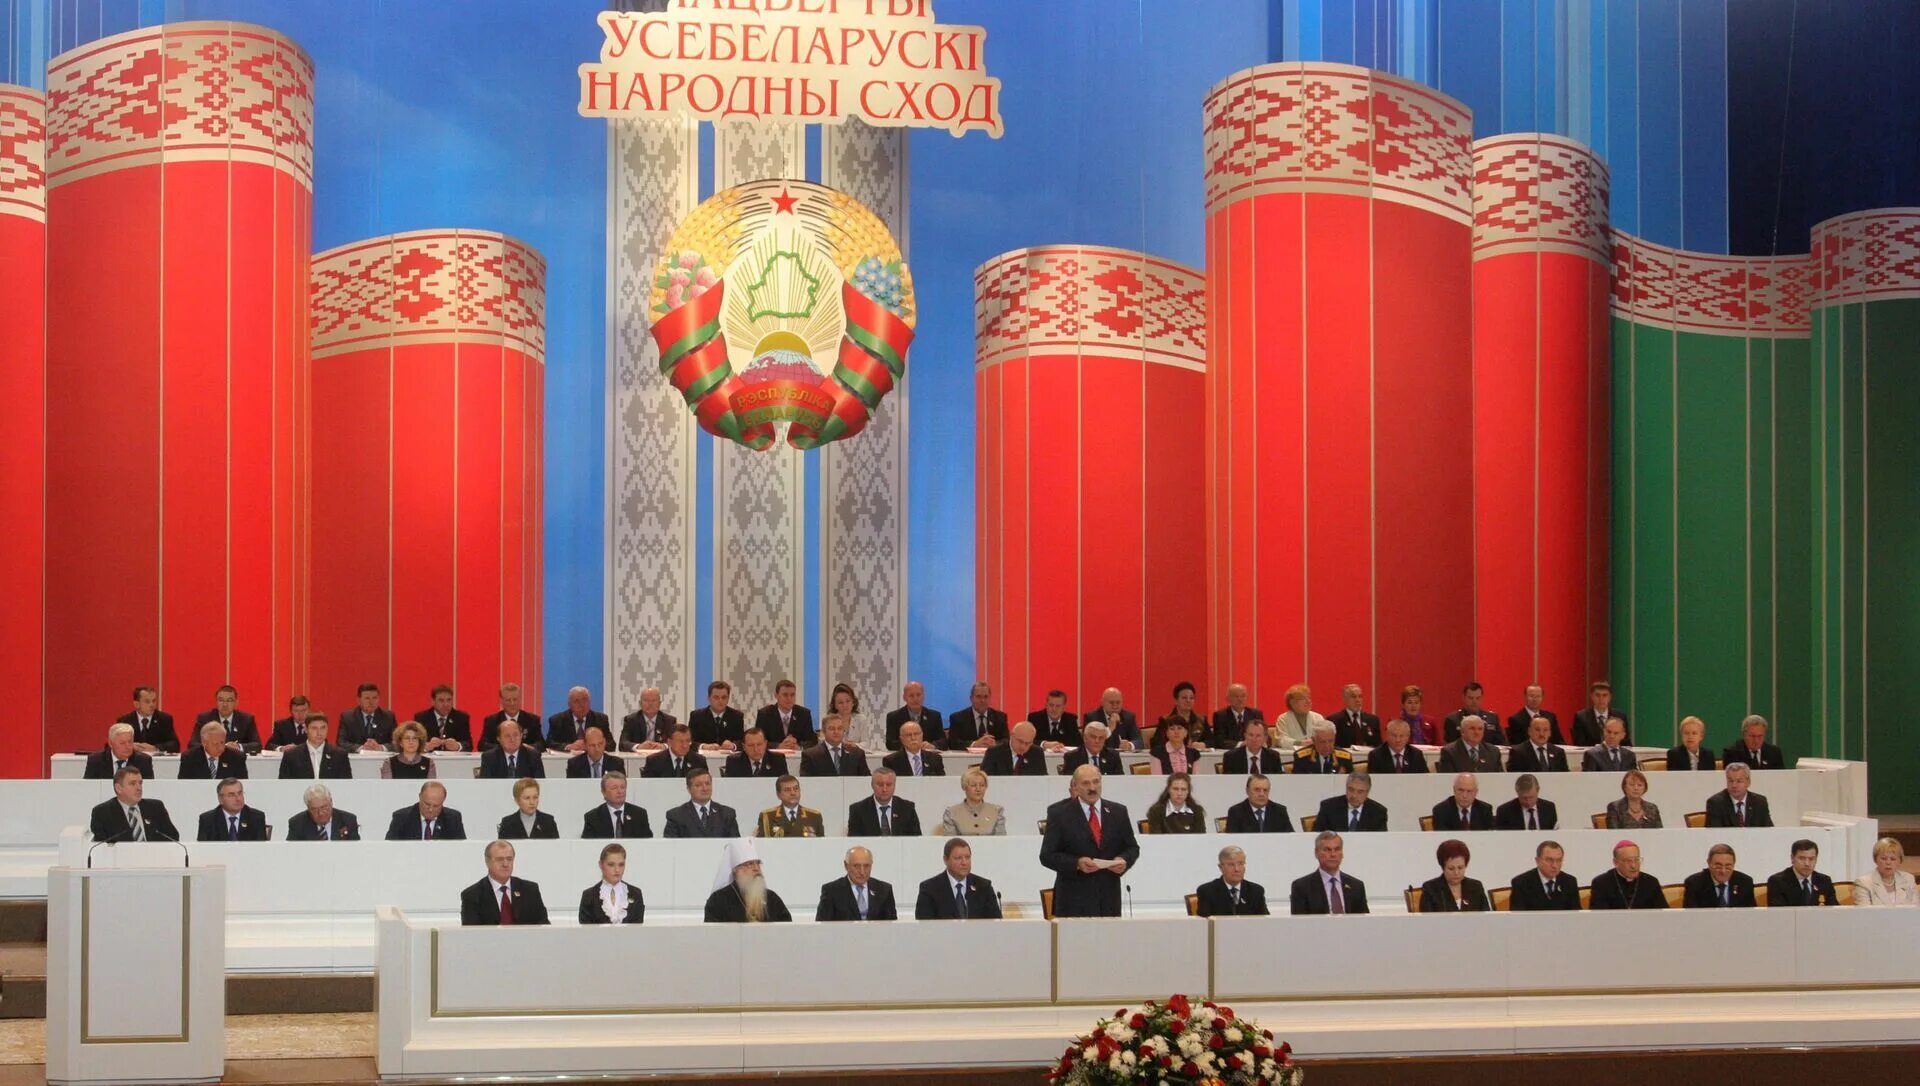 Все белорусское народное собрание